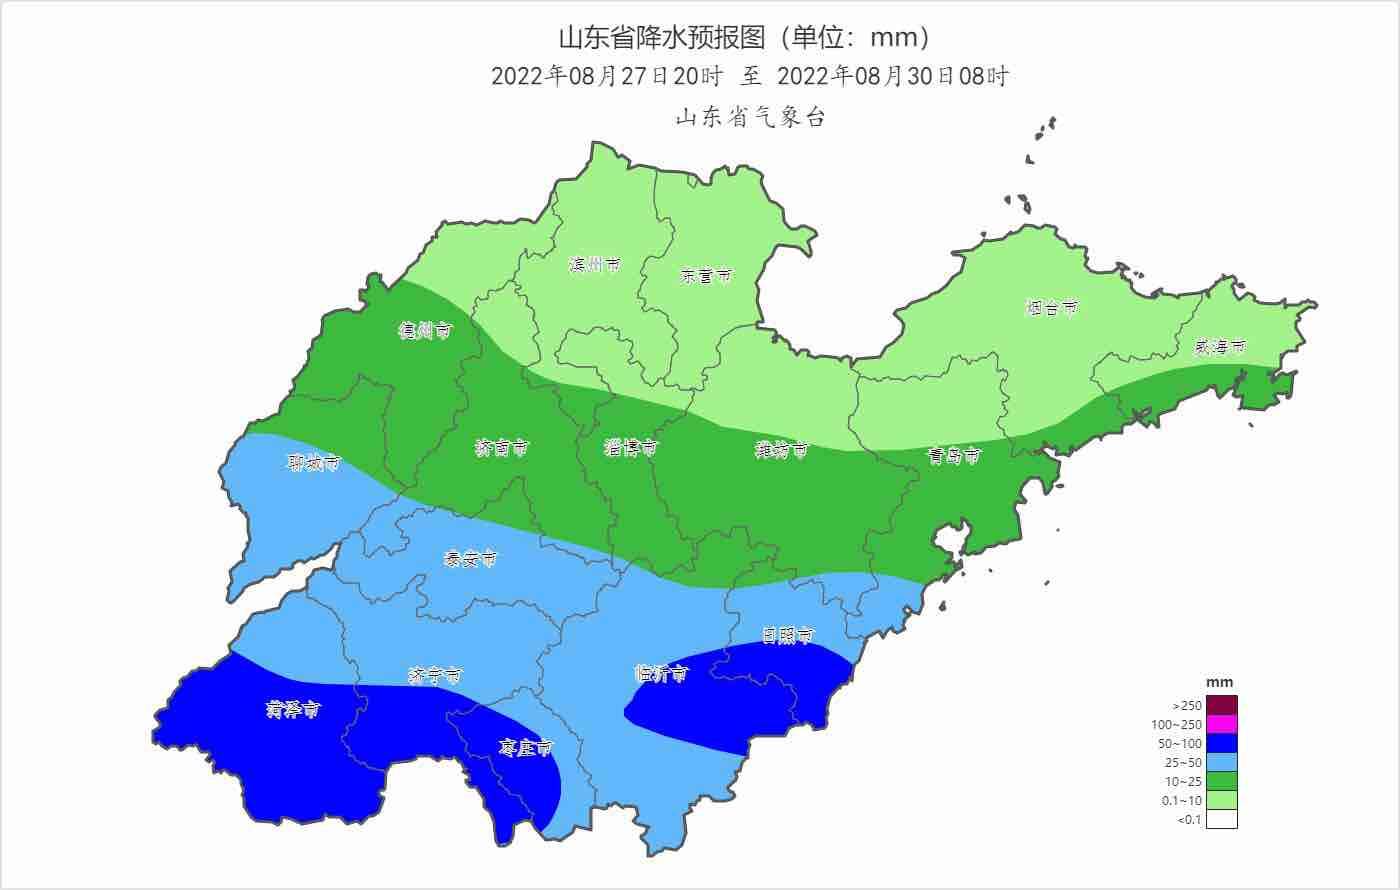 山东中南部28日凌晨至29日夜间将有明显降雨 菏泽等7市部分地区暴雨